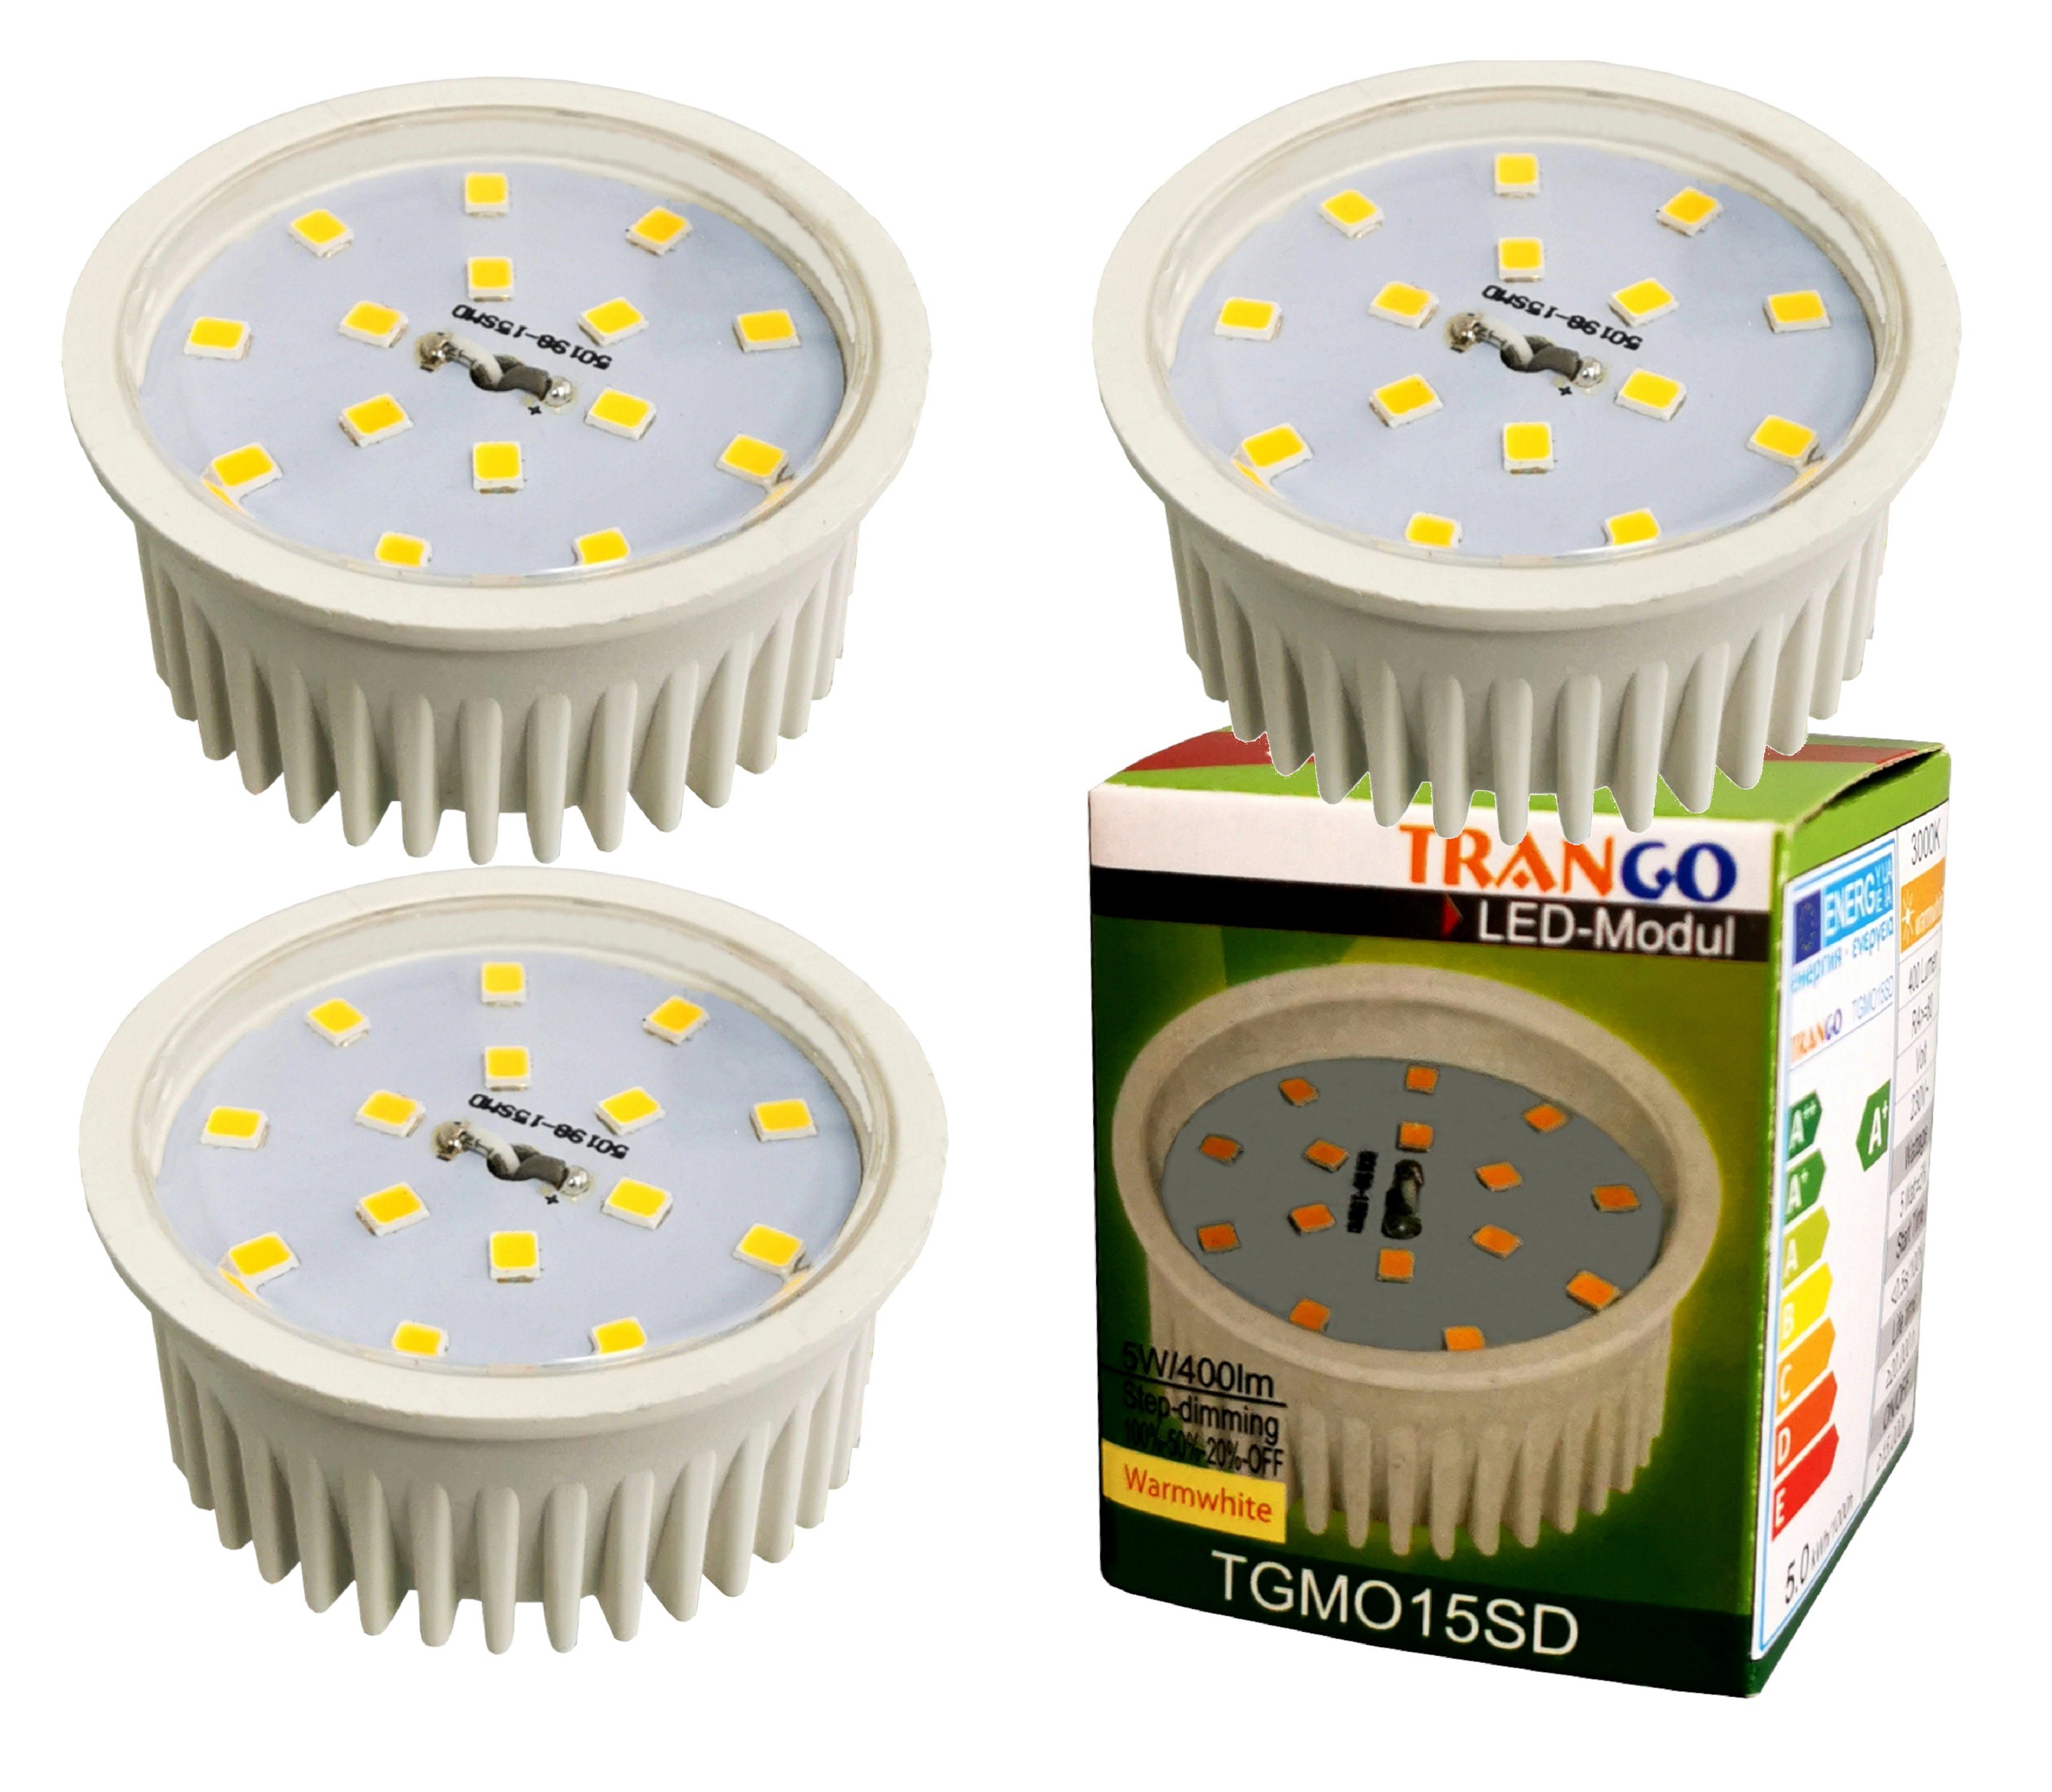 TRANGO LED Einbaustrahler, 3er Pack MO15SD-3 Ultra flach 5Watt 3 Stufen dimmbar LED Modul 3000K warmweiß zum Austauschen GU10 & MR16 Halogen Leuchtmittel, für Einbauleuchten, Deckenstrahler, Deckenleuchte, Spots | Strahler